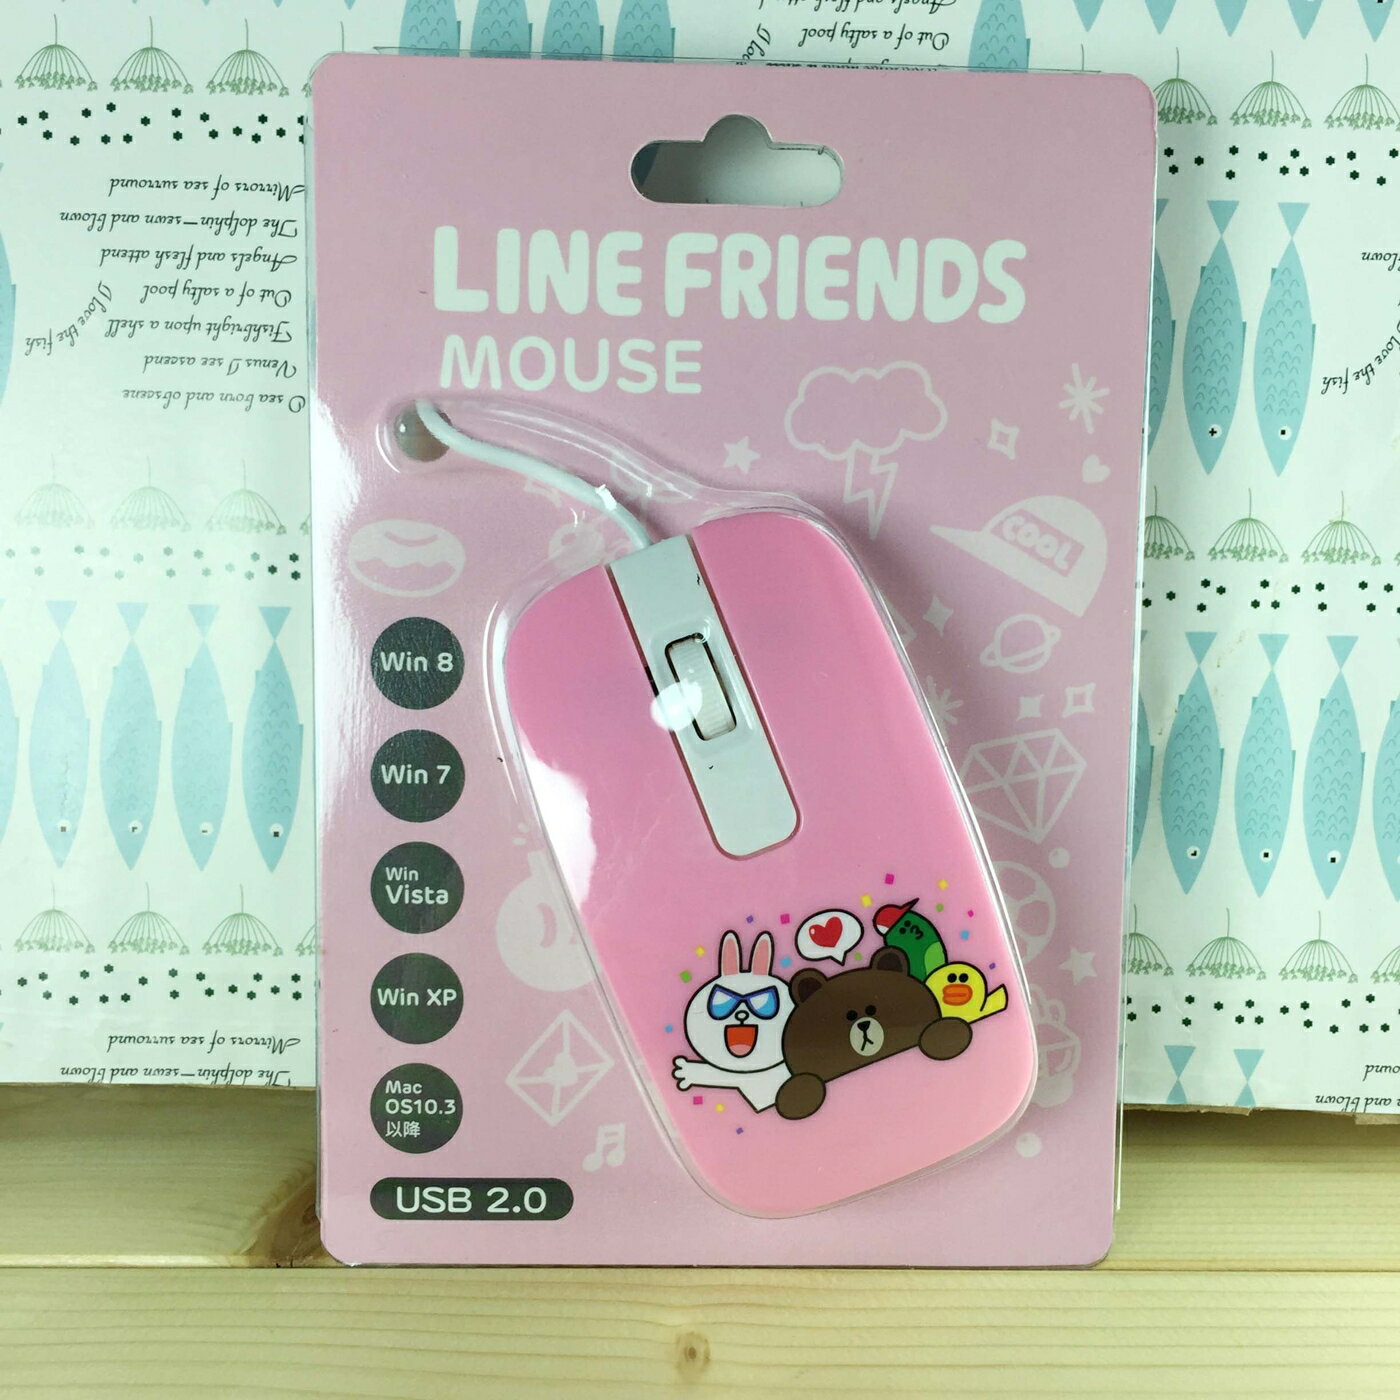 【震撼精品百貨】LINE FRIENDS 兔兔、熊大 滑鼠-熊大家族綜合圖案-粉色*64501 震撼日式精品百貨